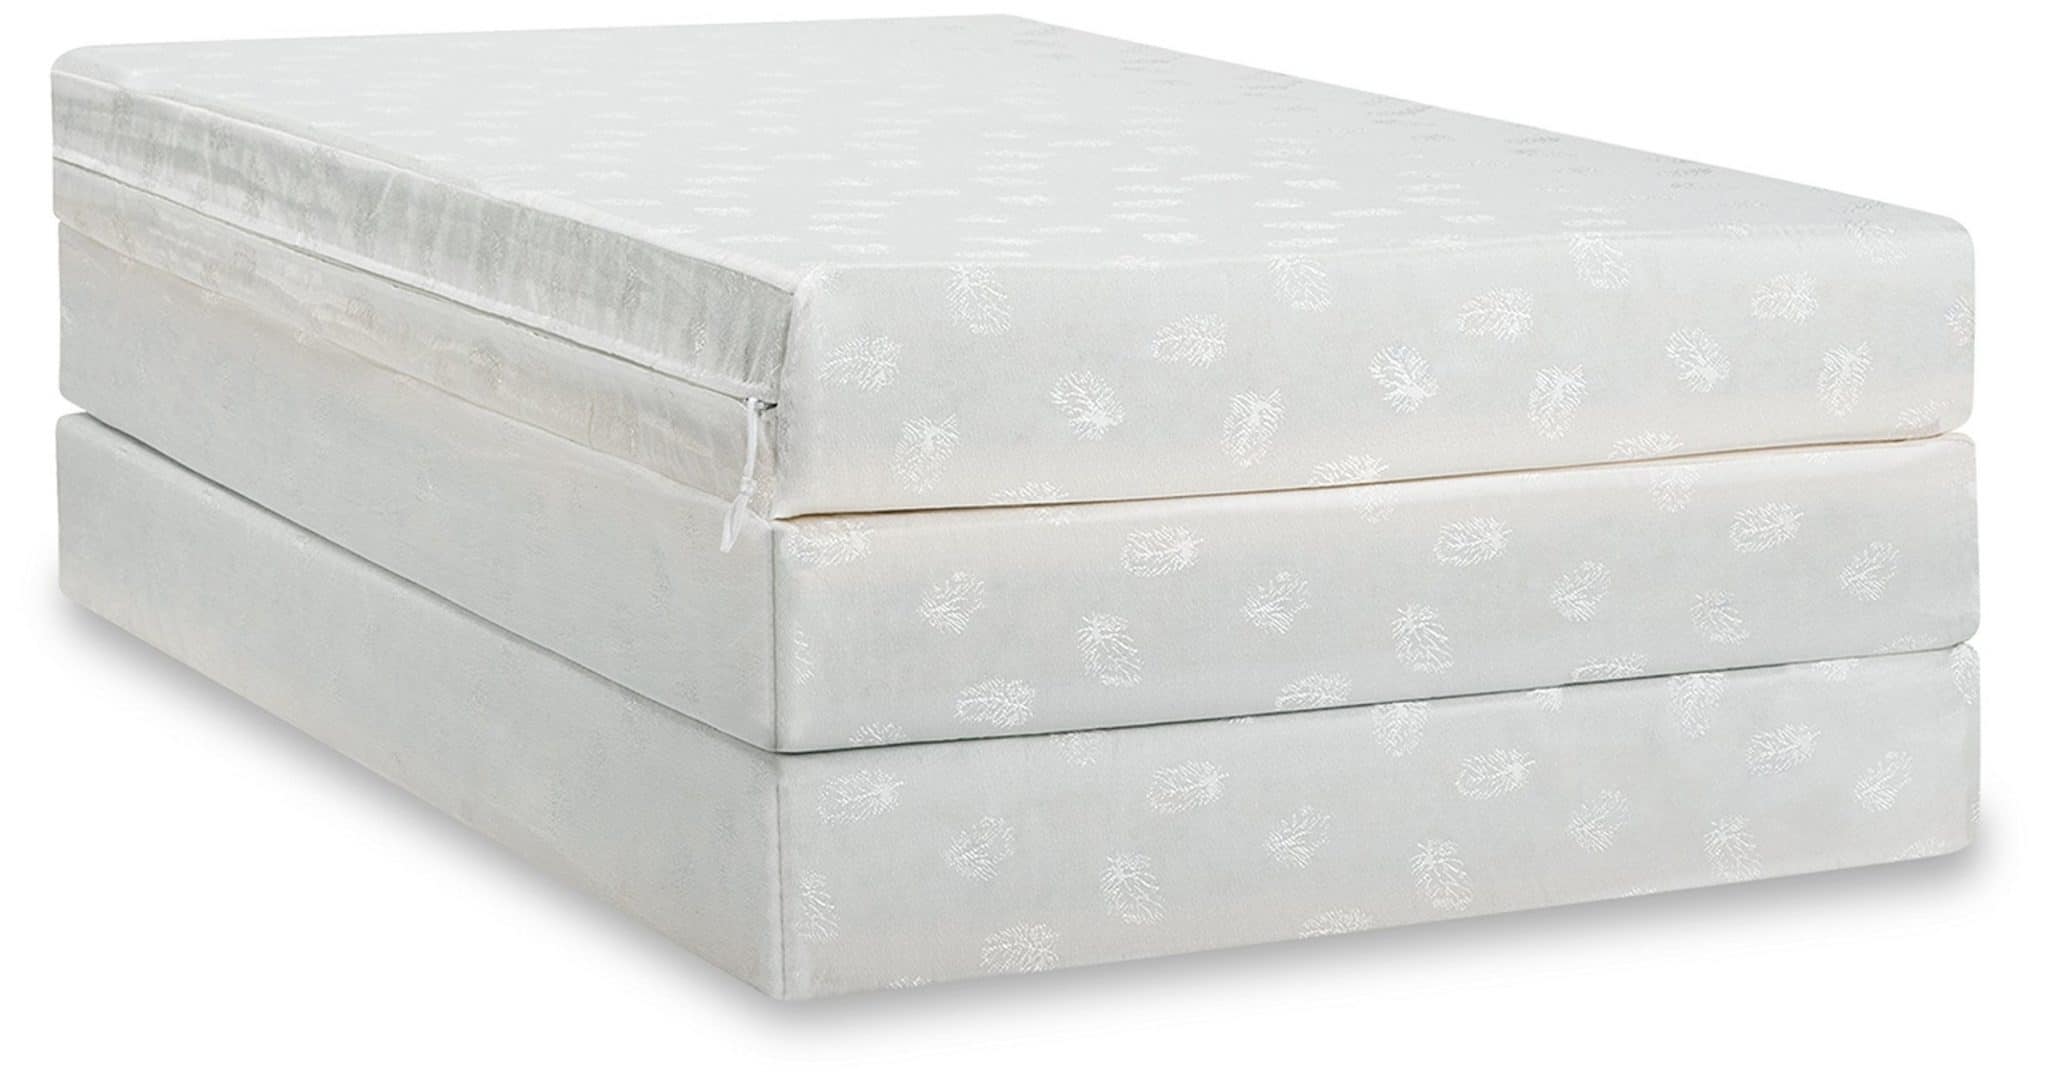 single fold away foam mattress